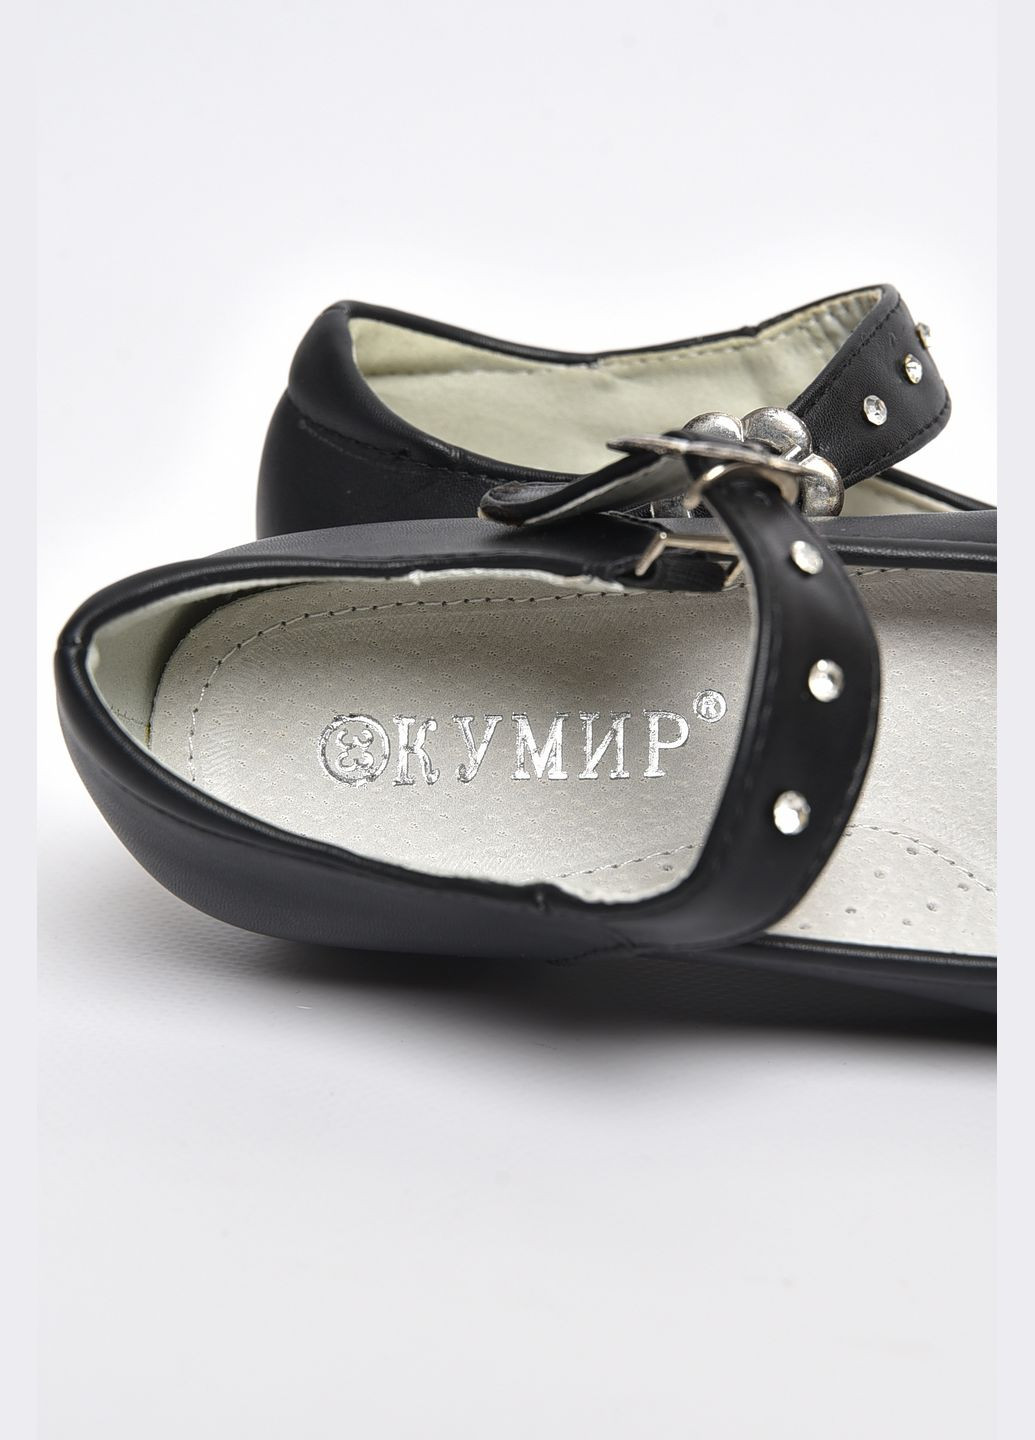 Туфлі для дівчинки чорного кольору Let's Shop (289456850)